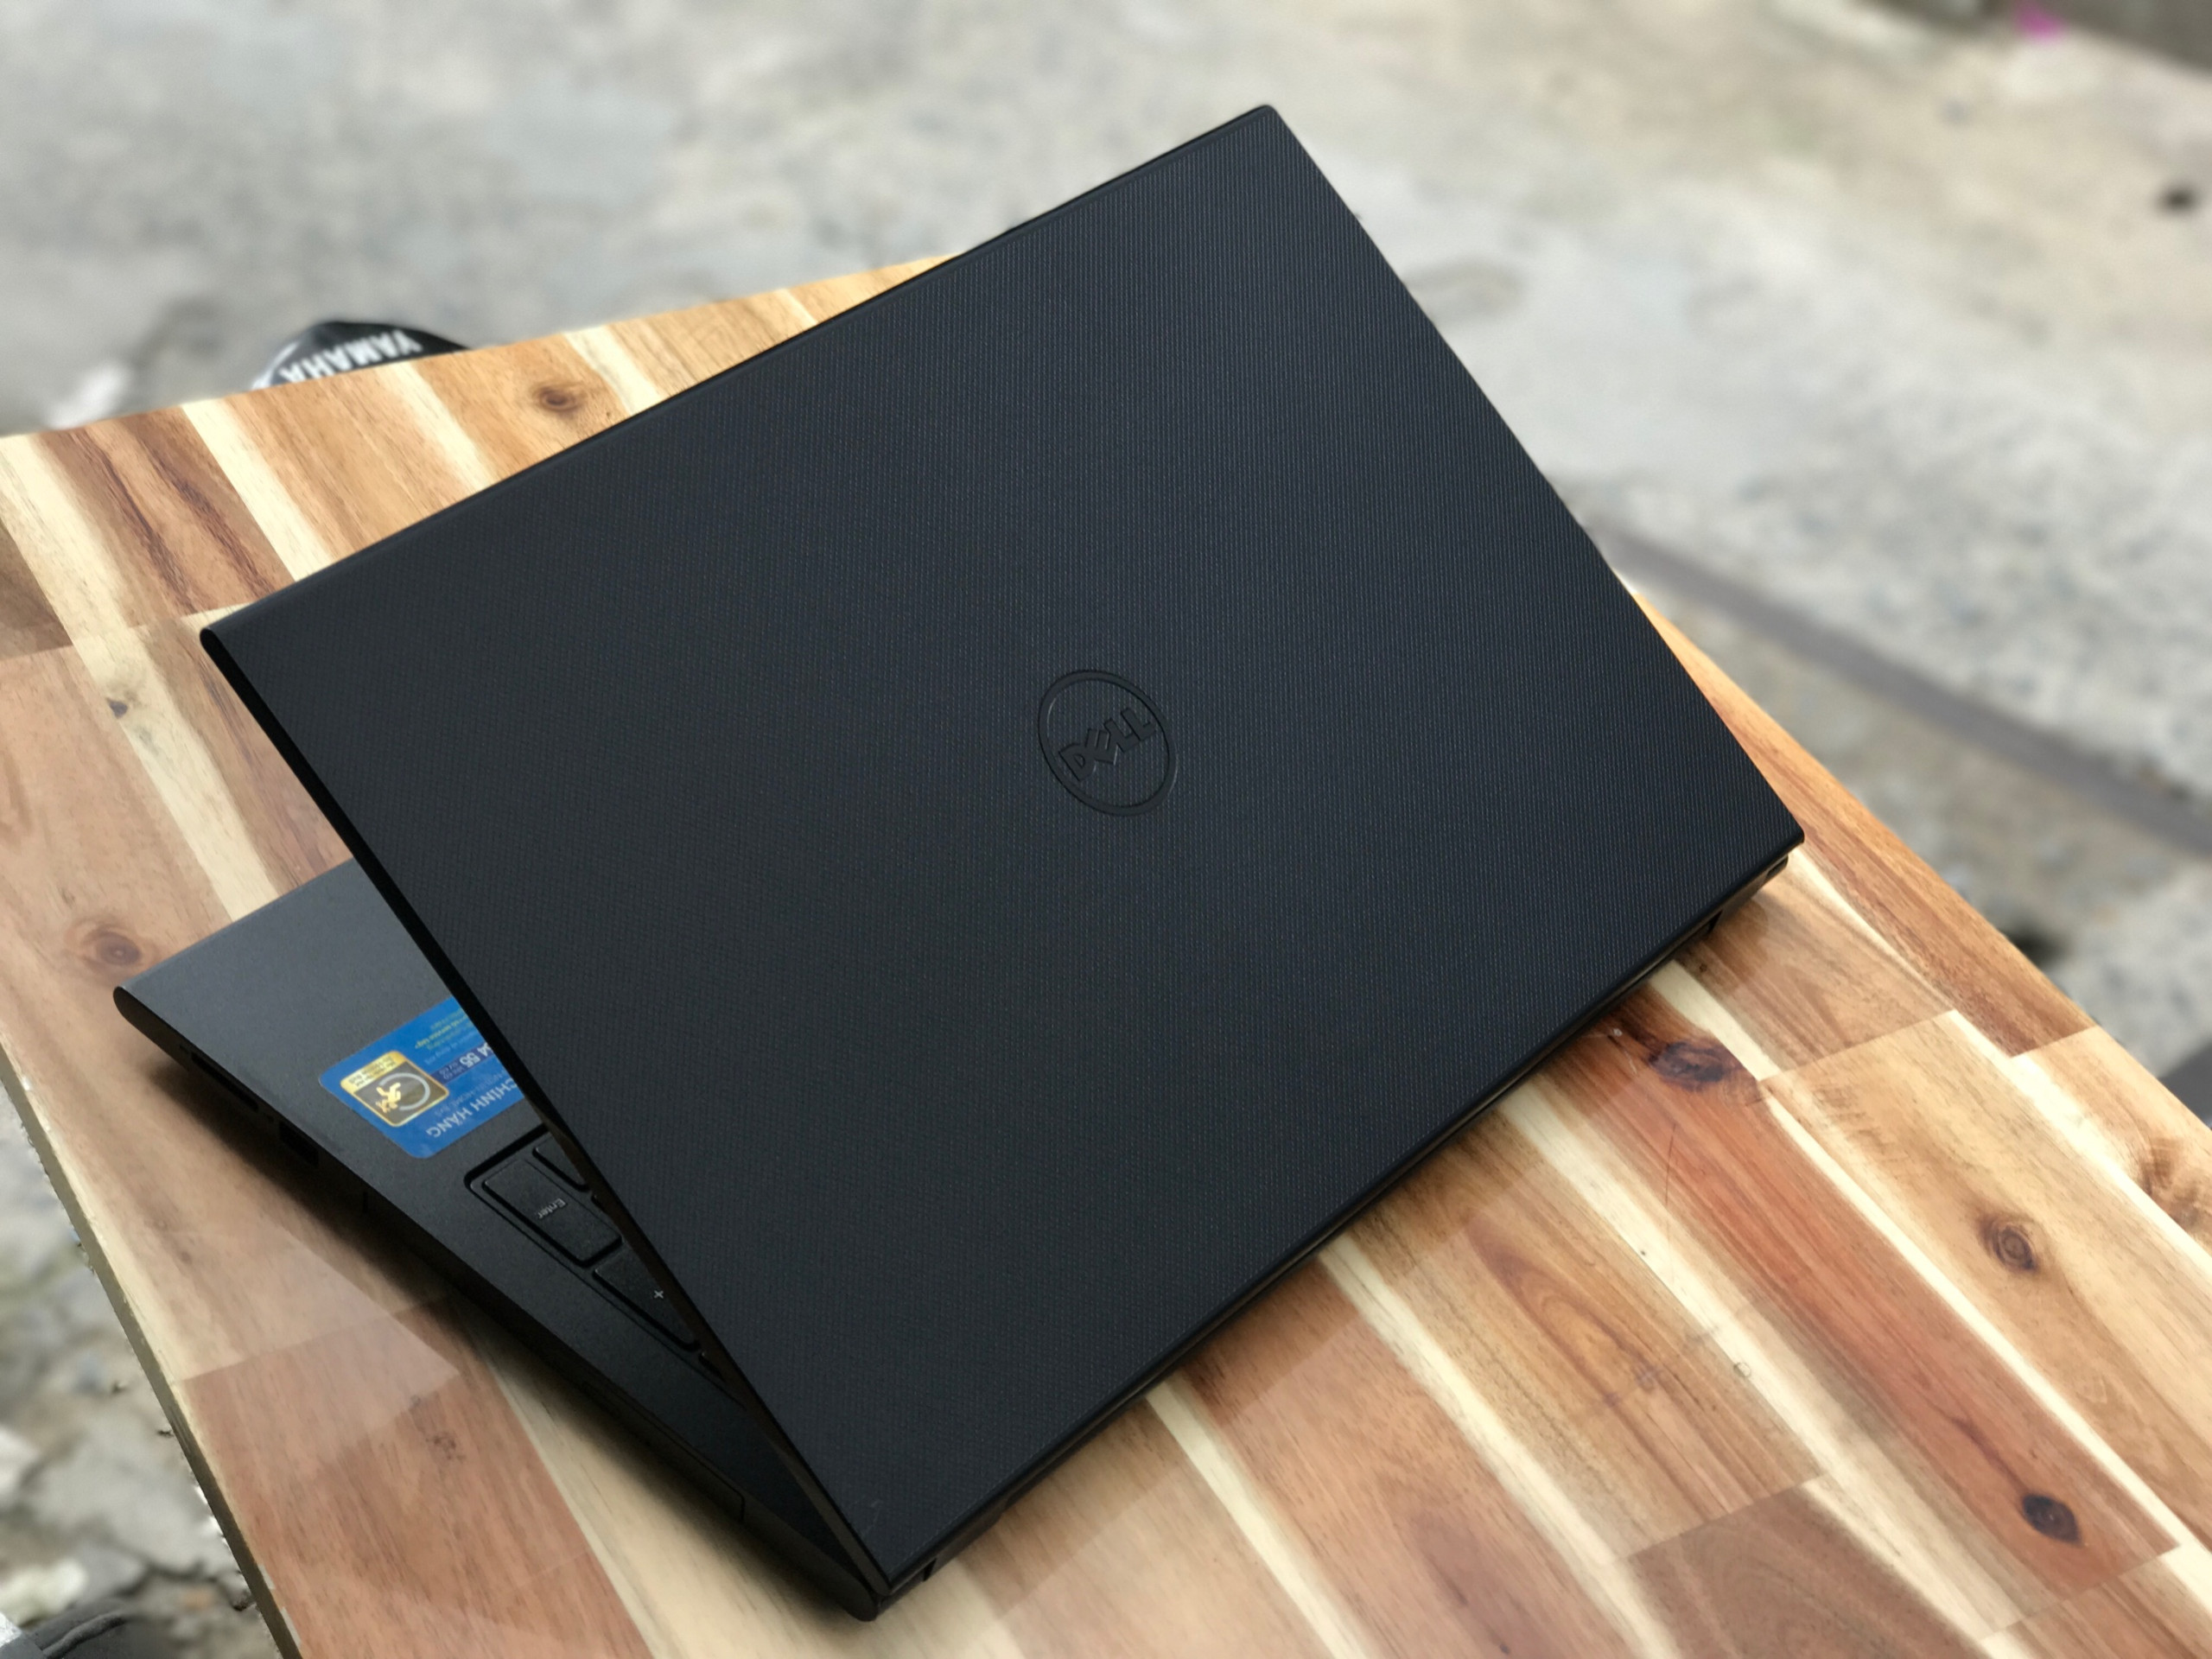 Laptop Dell Inspiron 3542, i3 4005U 4G 500G Vga Nvidia GT820M  đẹp zin 100% Giá rẻ